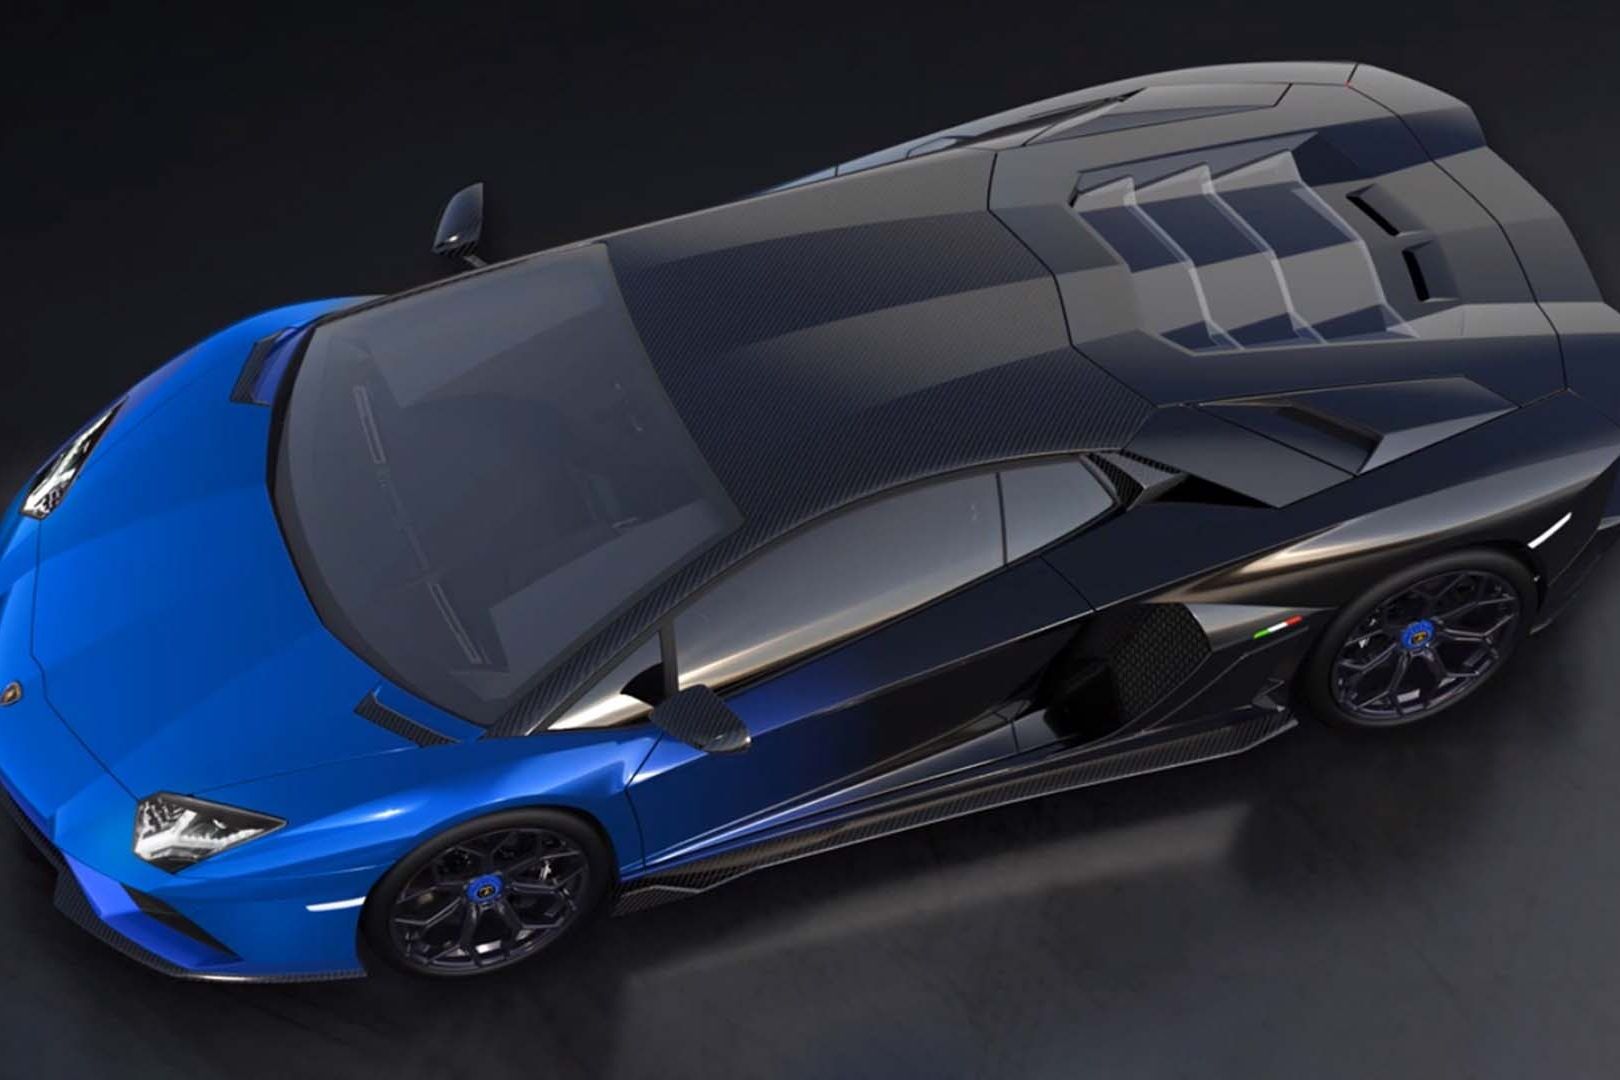 Ексклузивното Lamborghini Aventador LP 780-4 Ultimae Coupé ќе биде споено со NFT 1.1 и повеќе на аукција